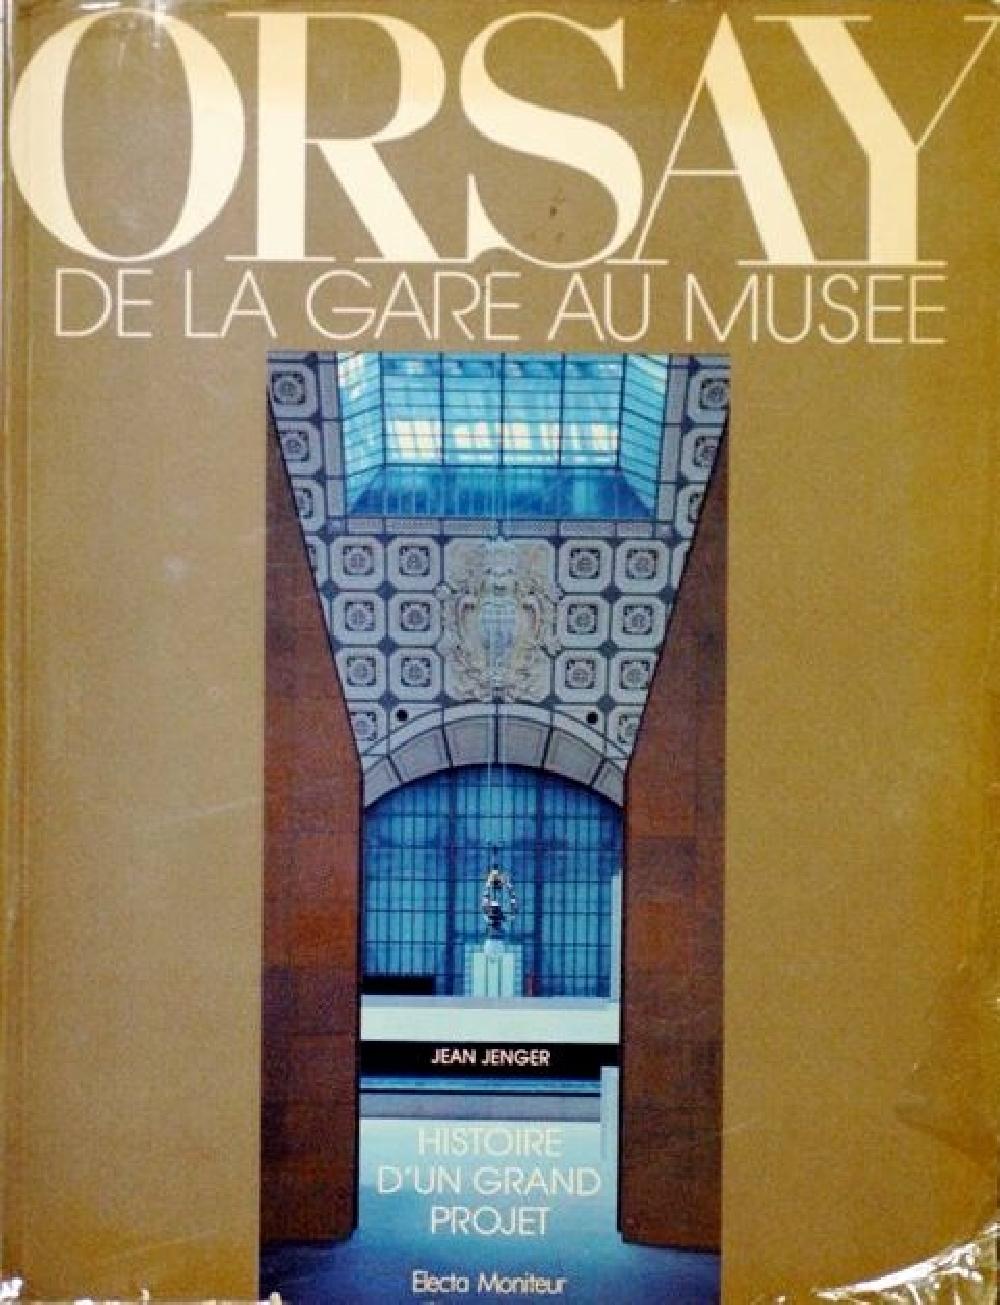 Orsay, de la gare au muse